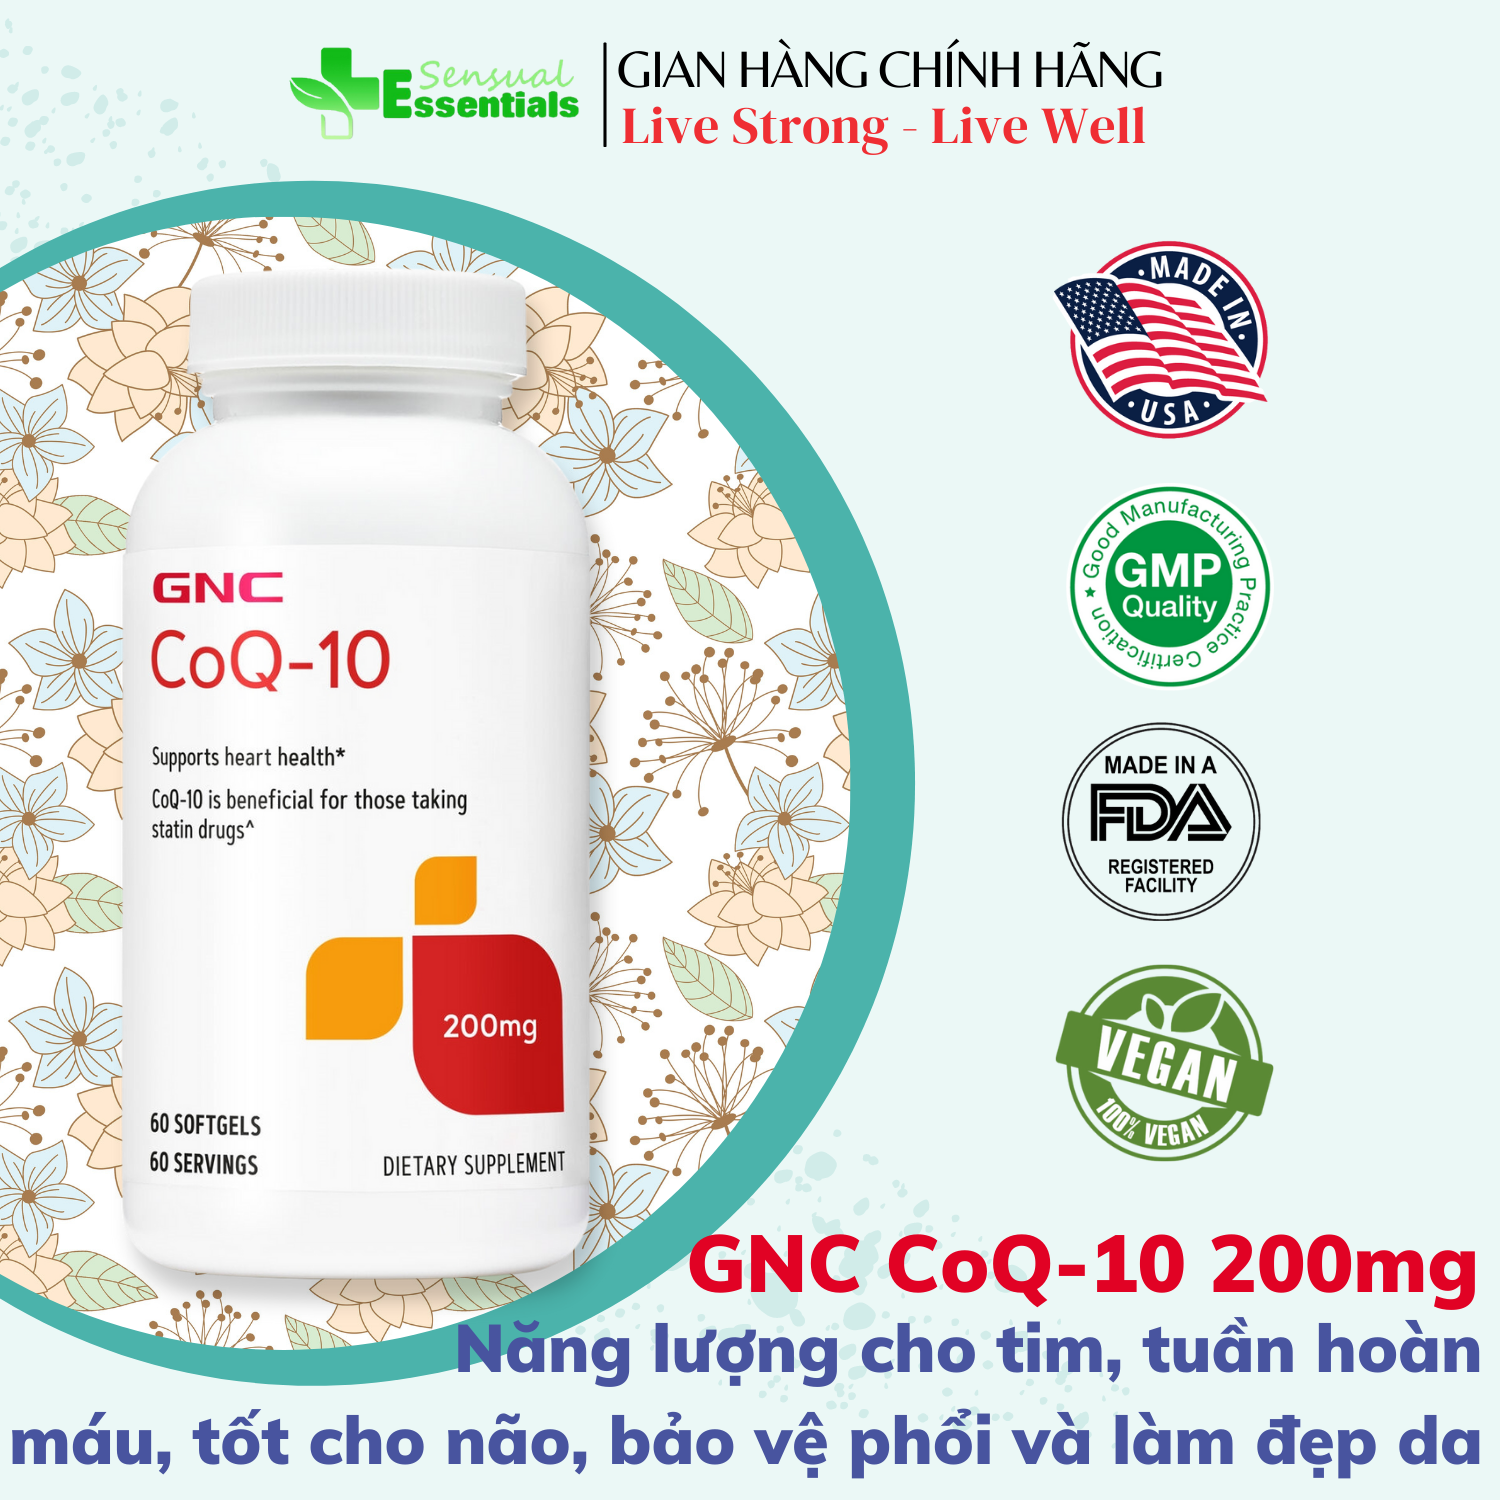 [CHÍNH HÃNG] Viên uống bổ sung CoQ-10 GNC hỗ trợ năng lượng tim, tuần hoàn máu, tốt cho não, phổi, chống lão hóa và làm đẹp da